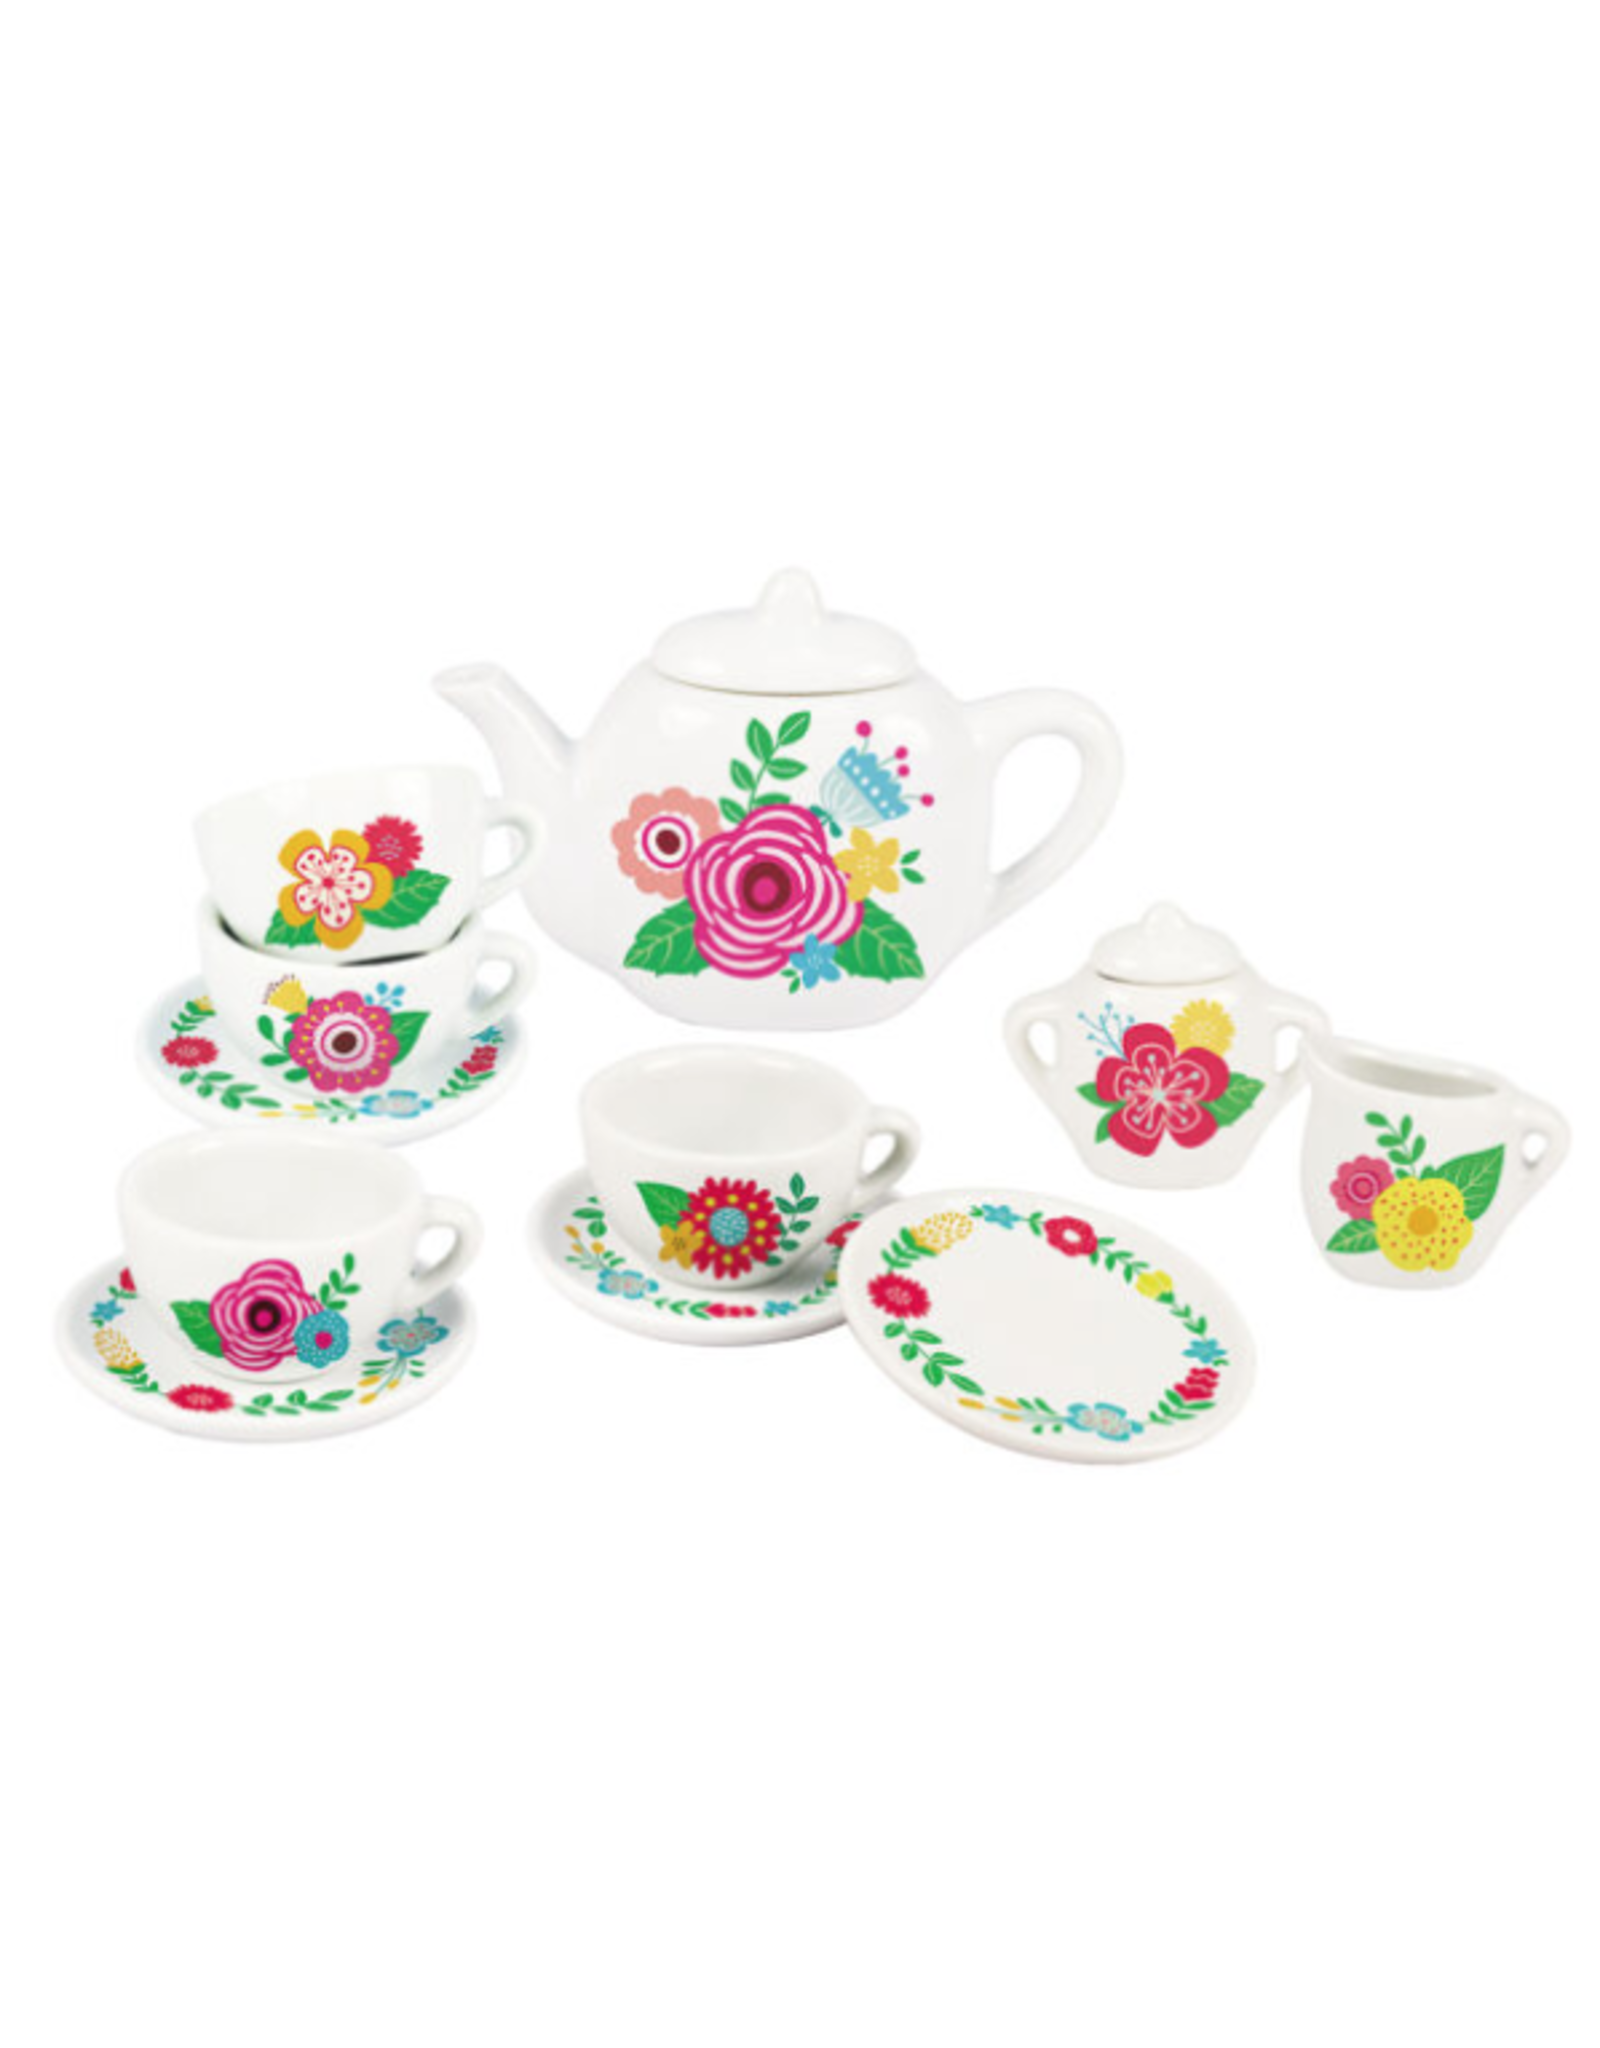 Playwell Floral Porcelain Tea Set 13pcs.